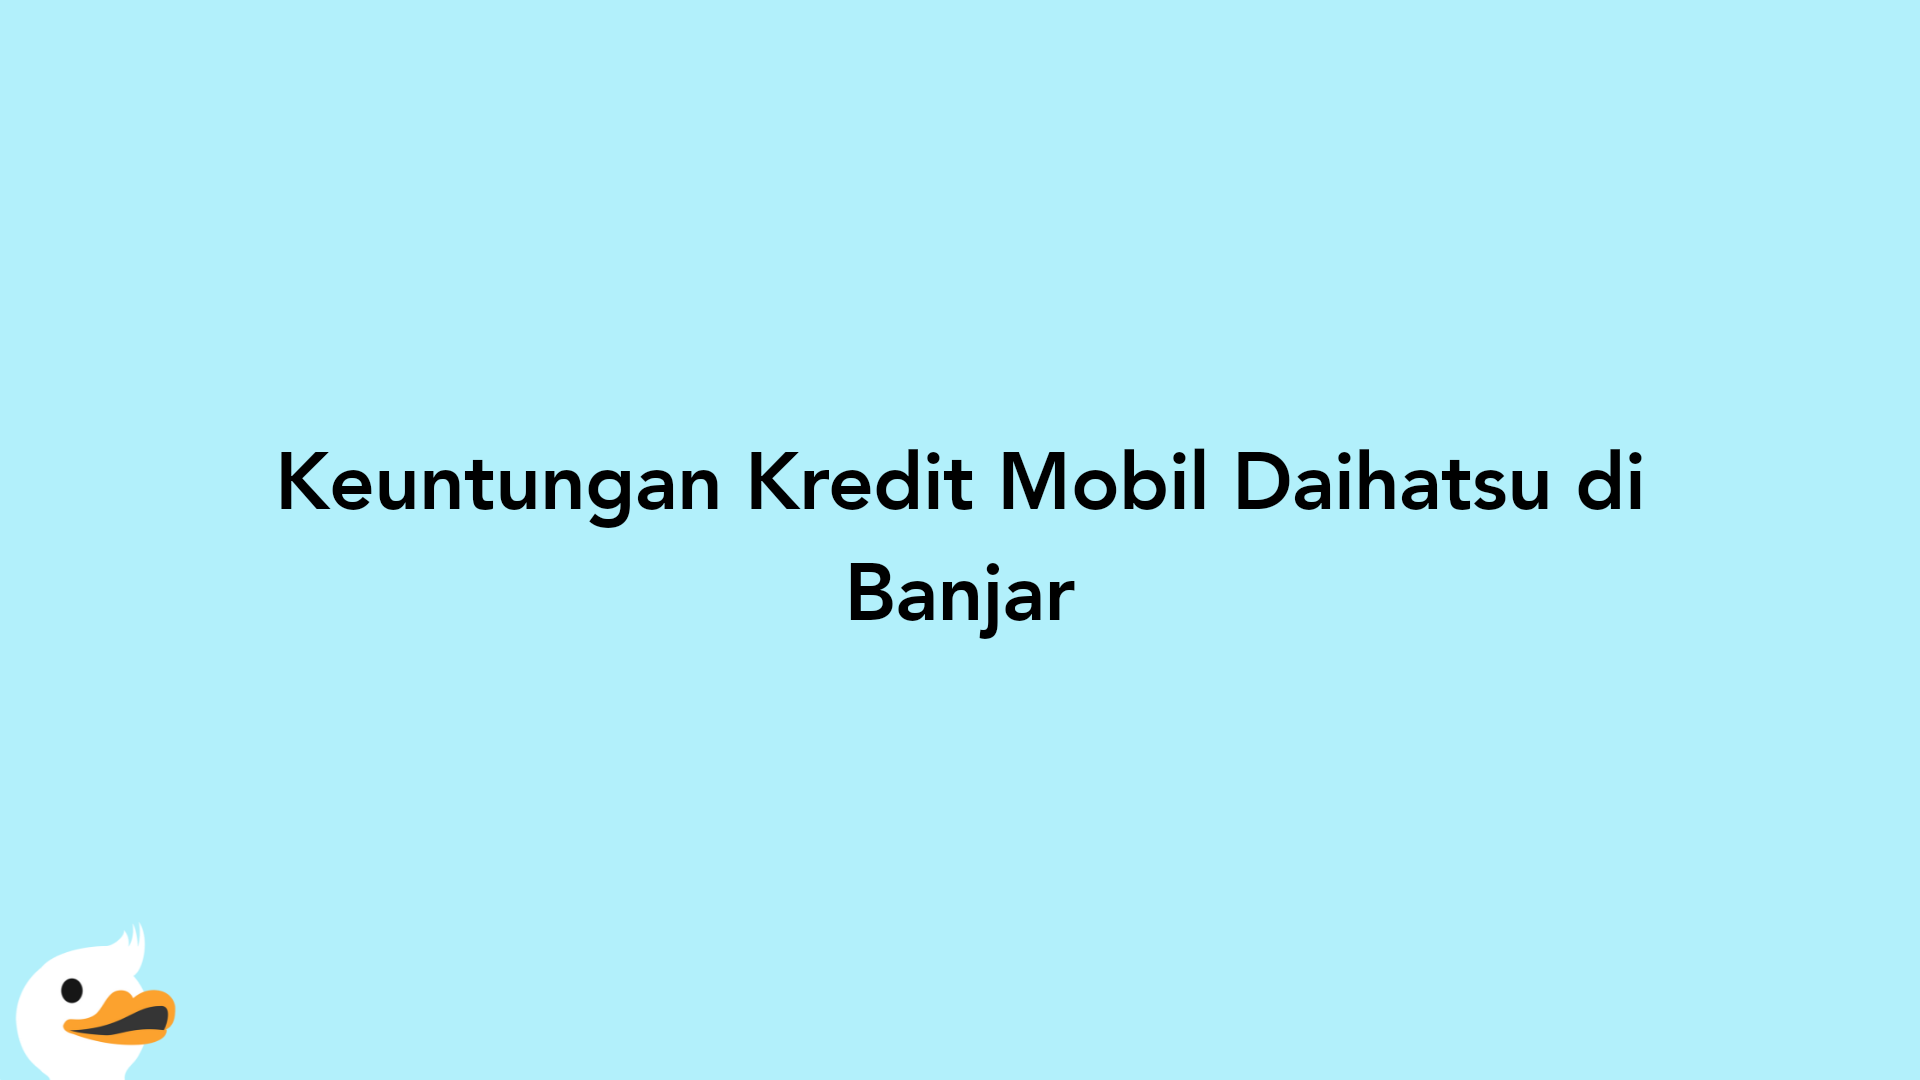 Keuntungan Kredit Mobil Daihatsu di Banjar